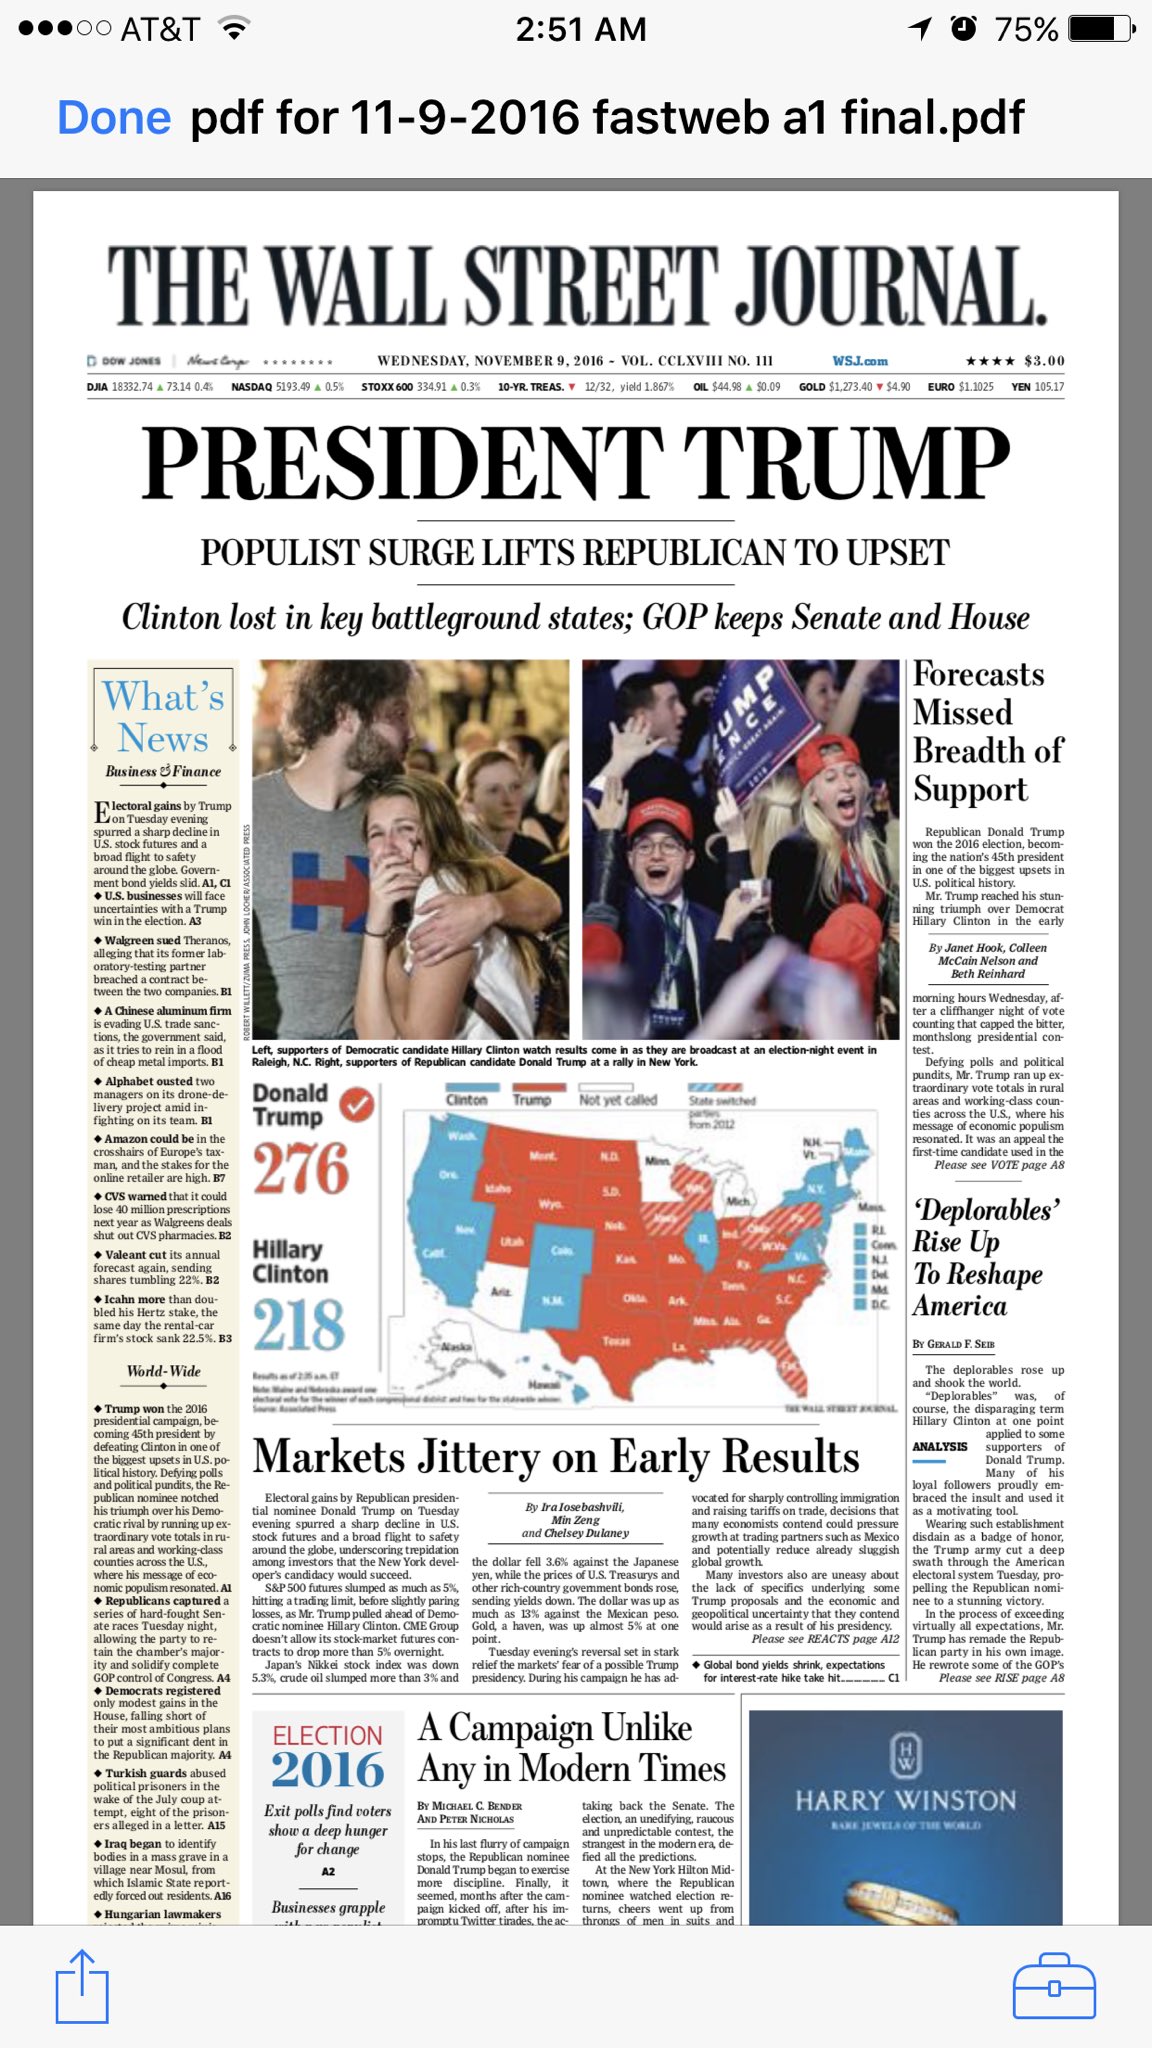 The Wall Street Journal показав обкладинку свіжої газети з президентом Трампом - фото 1